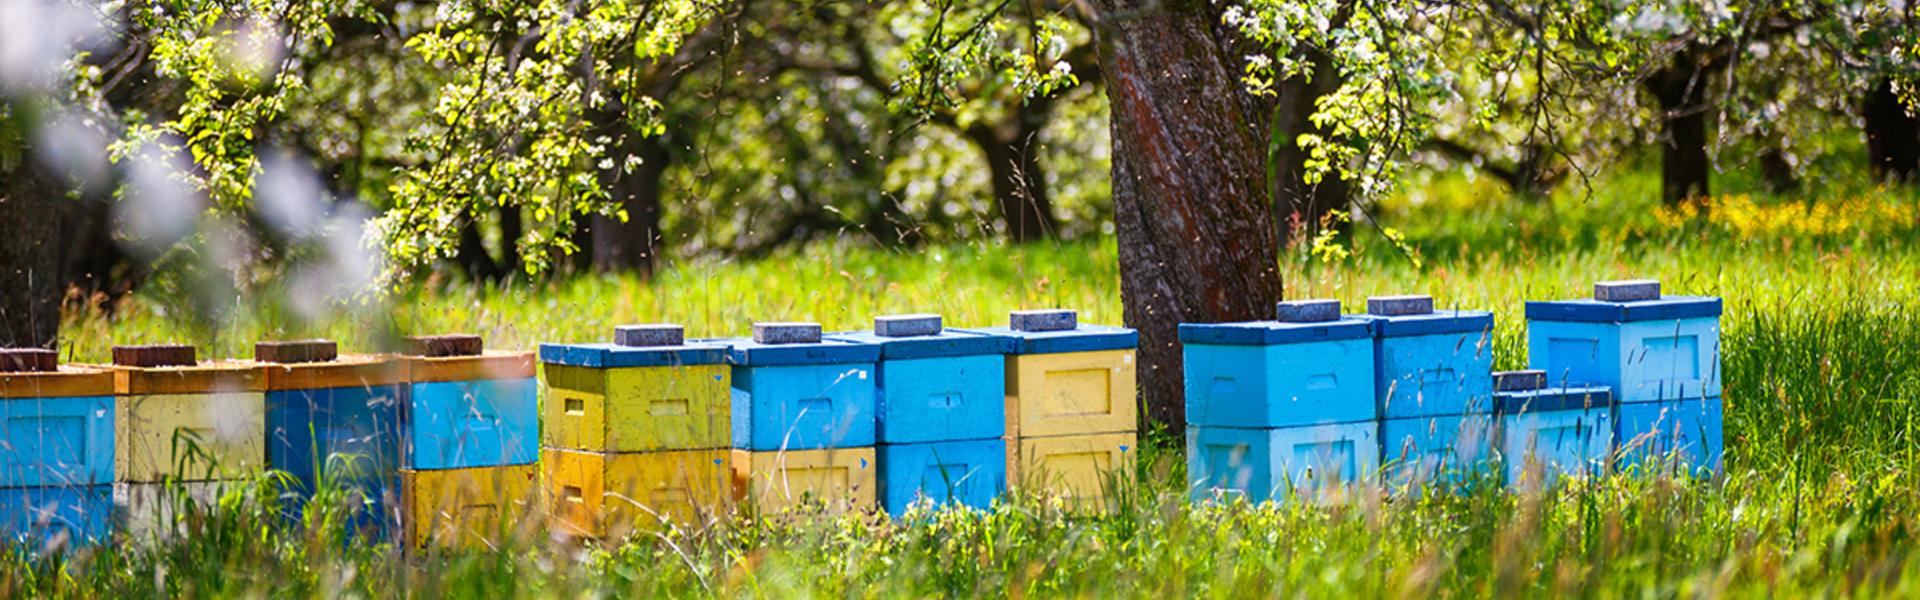 Pszczelarstwo, jako element lokalnej kultury Beskidu